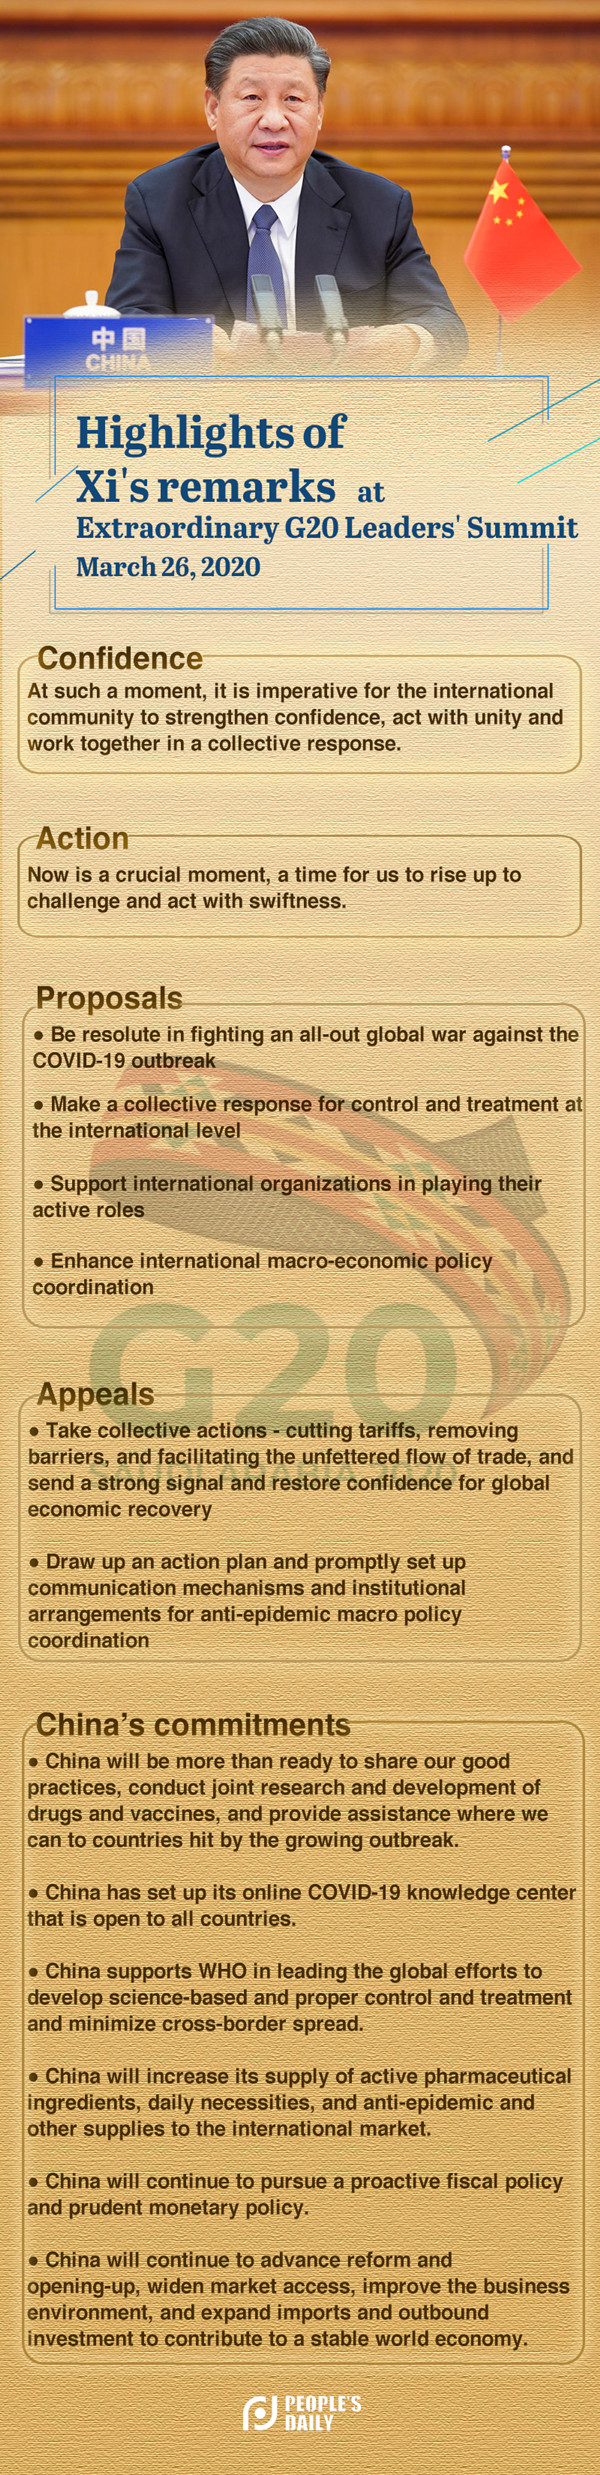 final-G20 speech-s.jpg